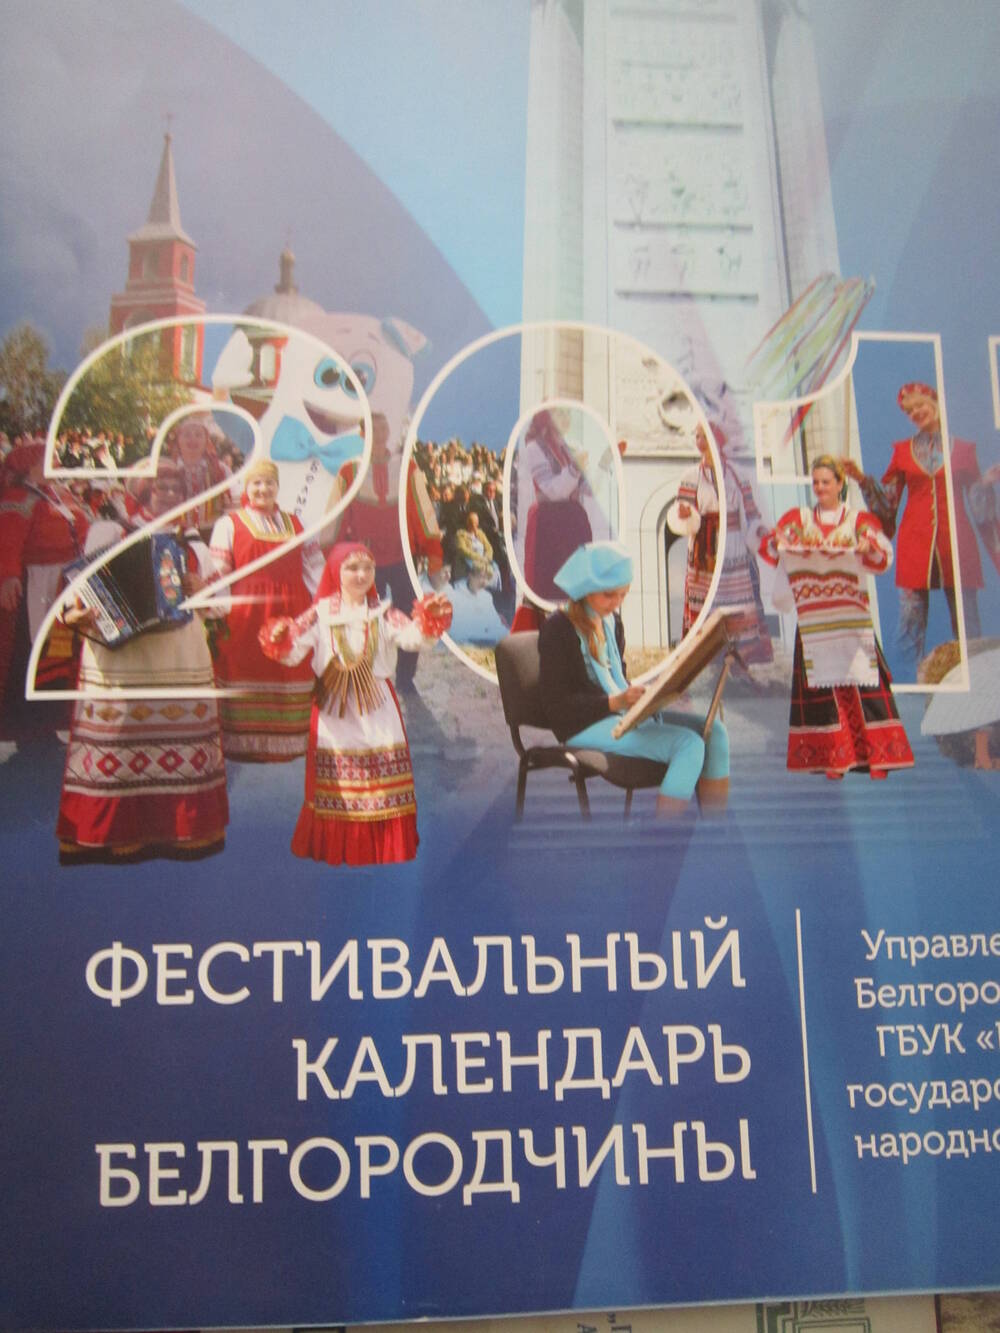 Календарь фестивальный белгородской области на 2017 год